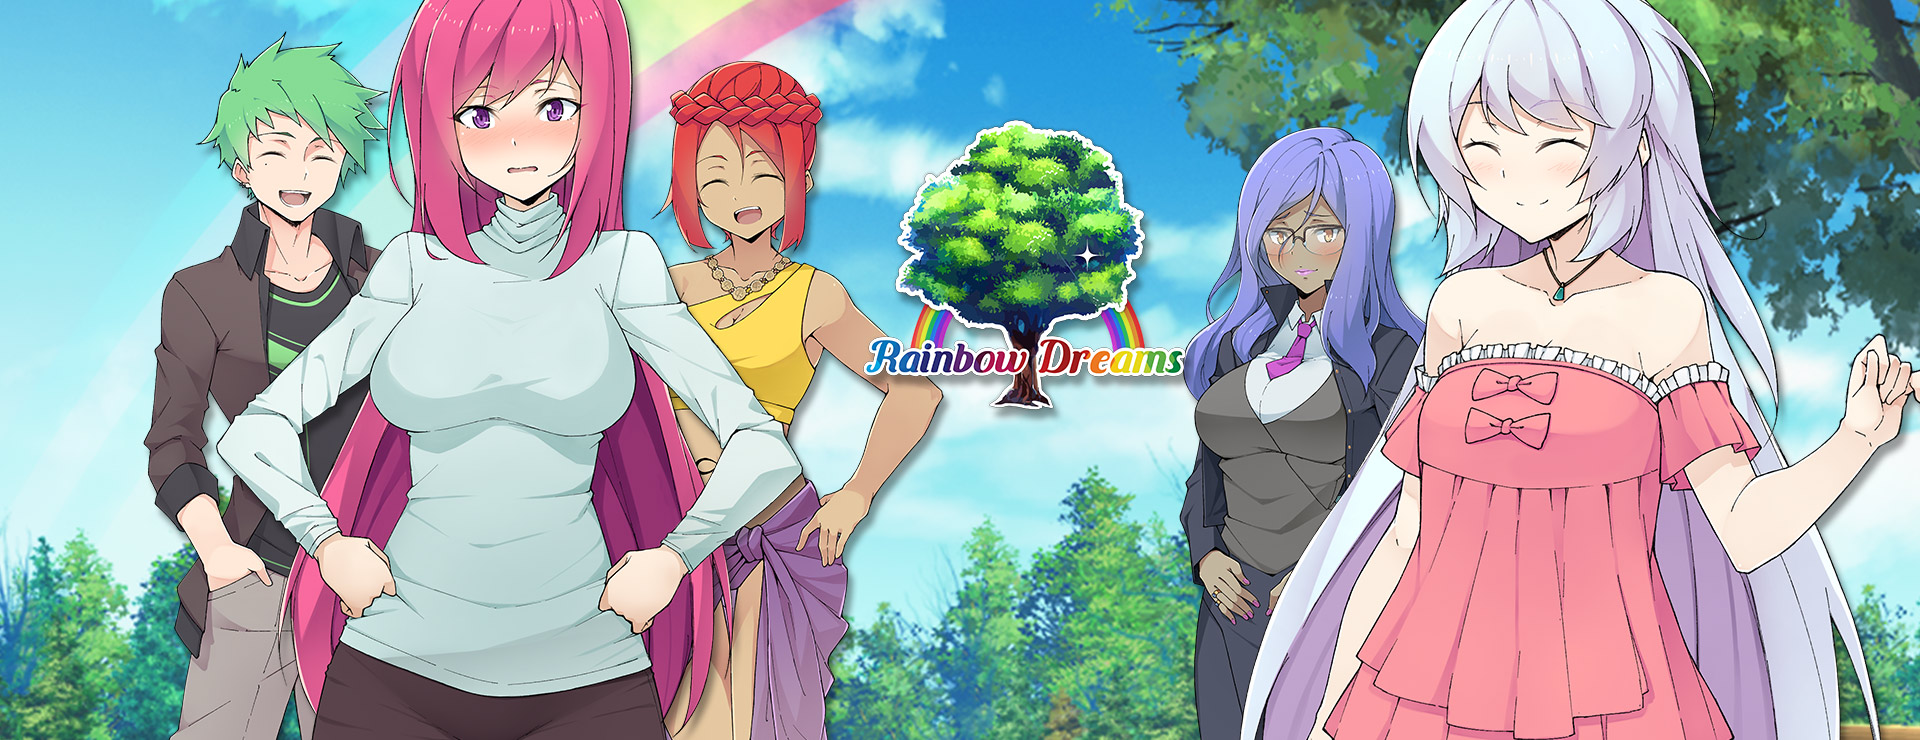 Rainbow Dreams - Deluxe Edition - Novela Visual Juego